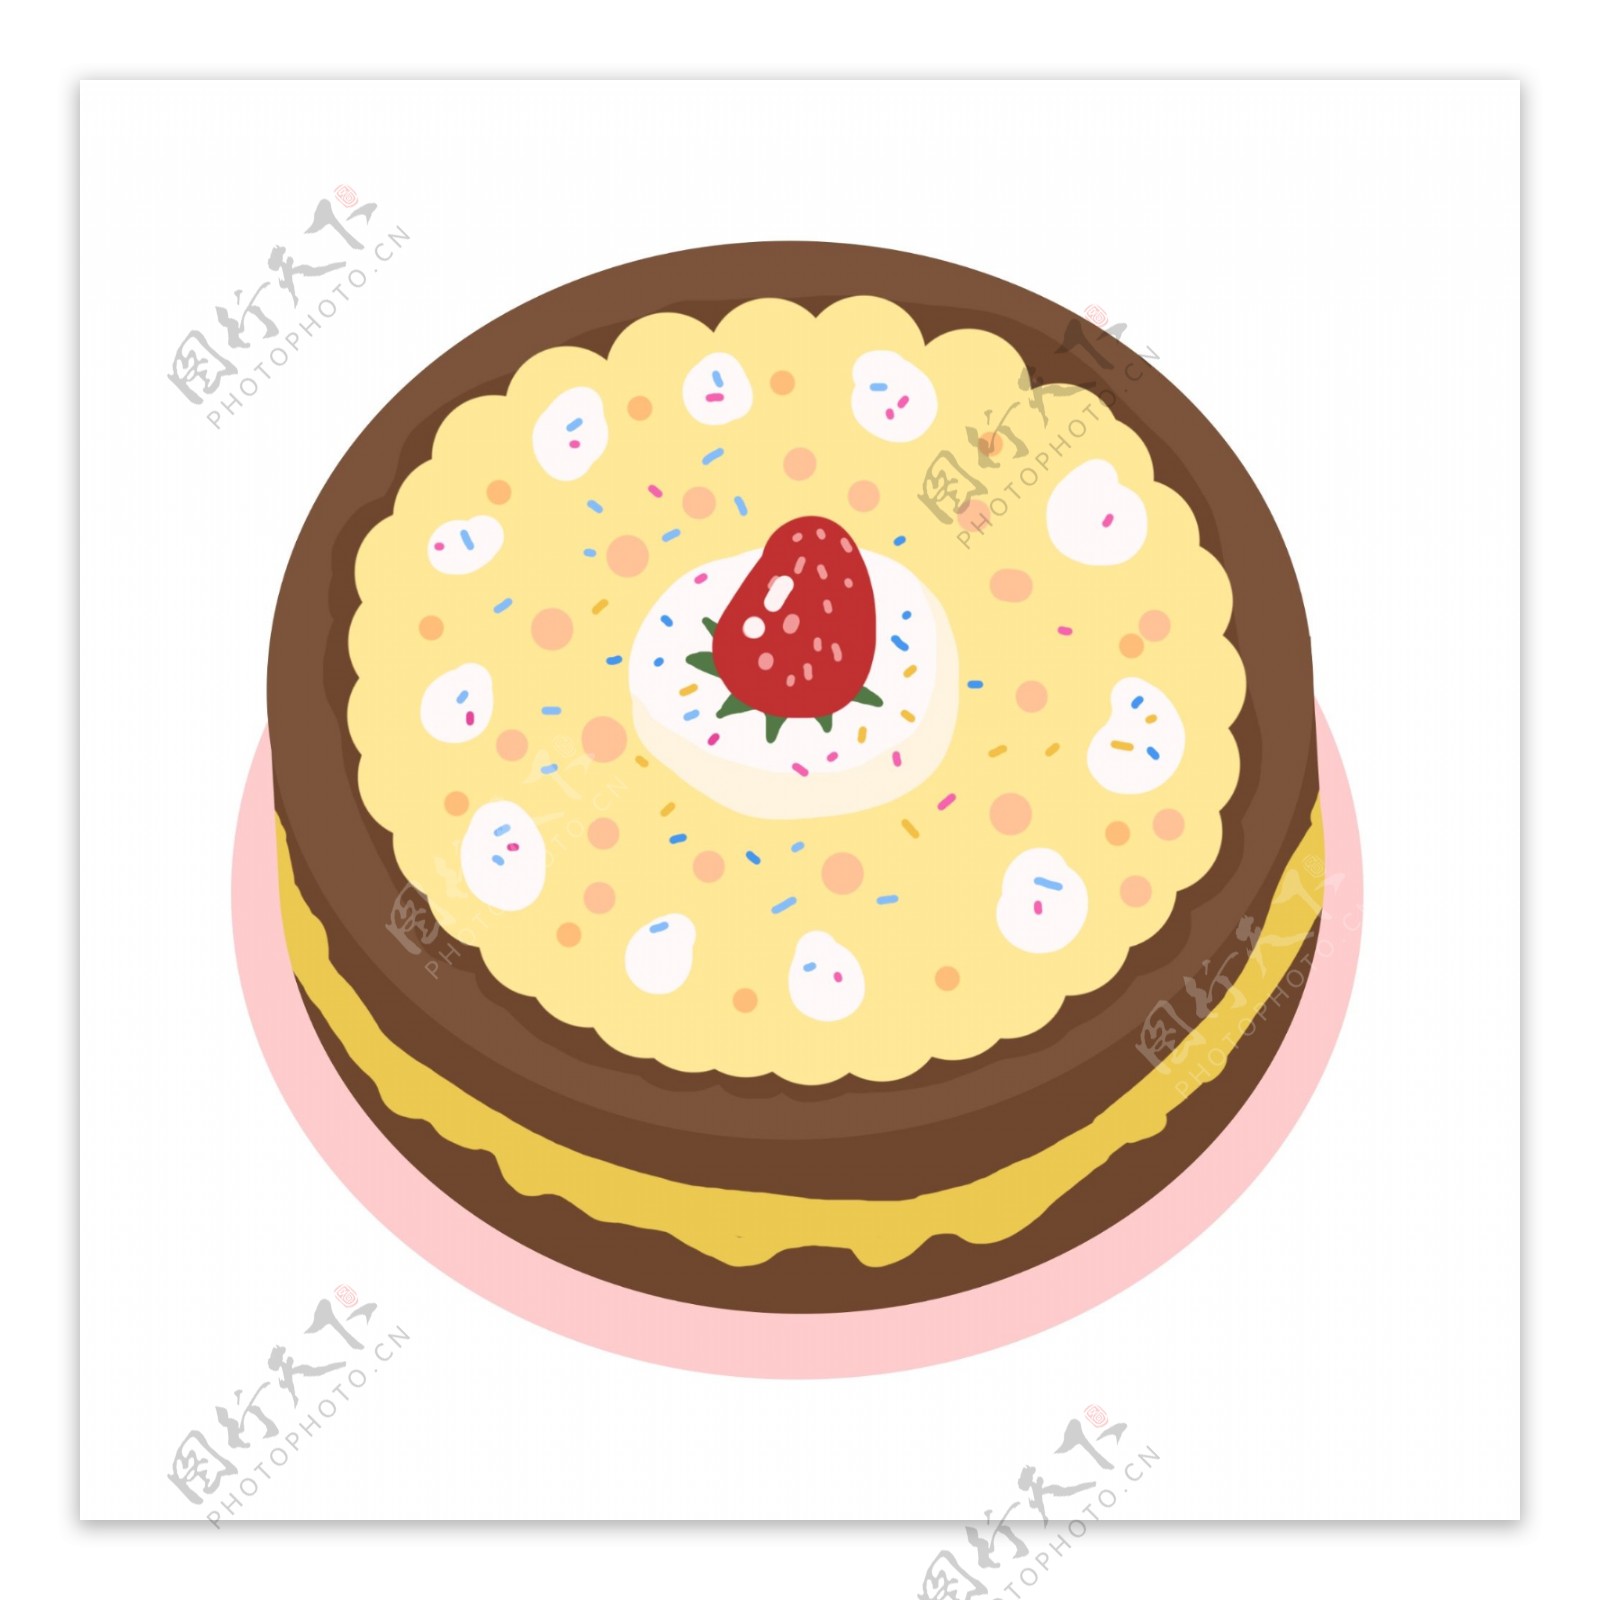 圆形草莓奶油蛋糕